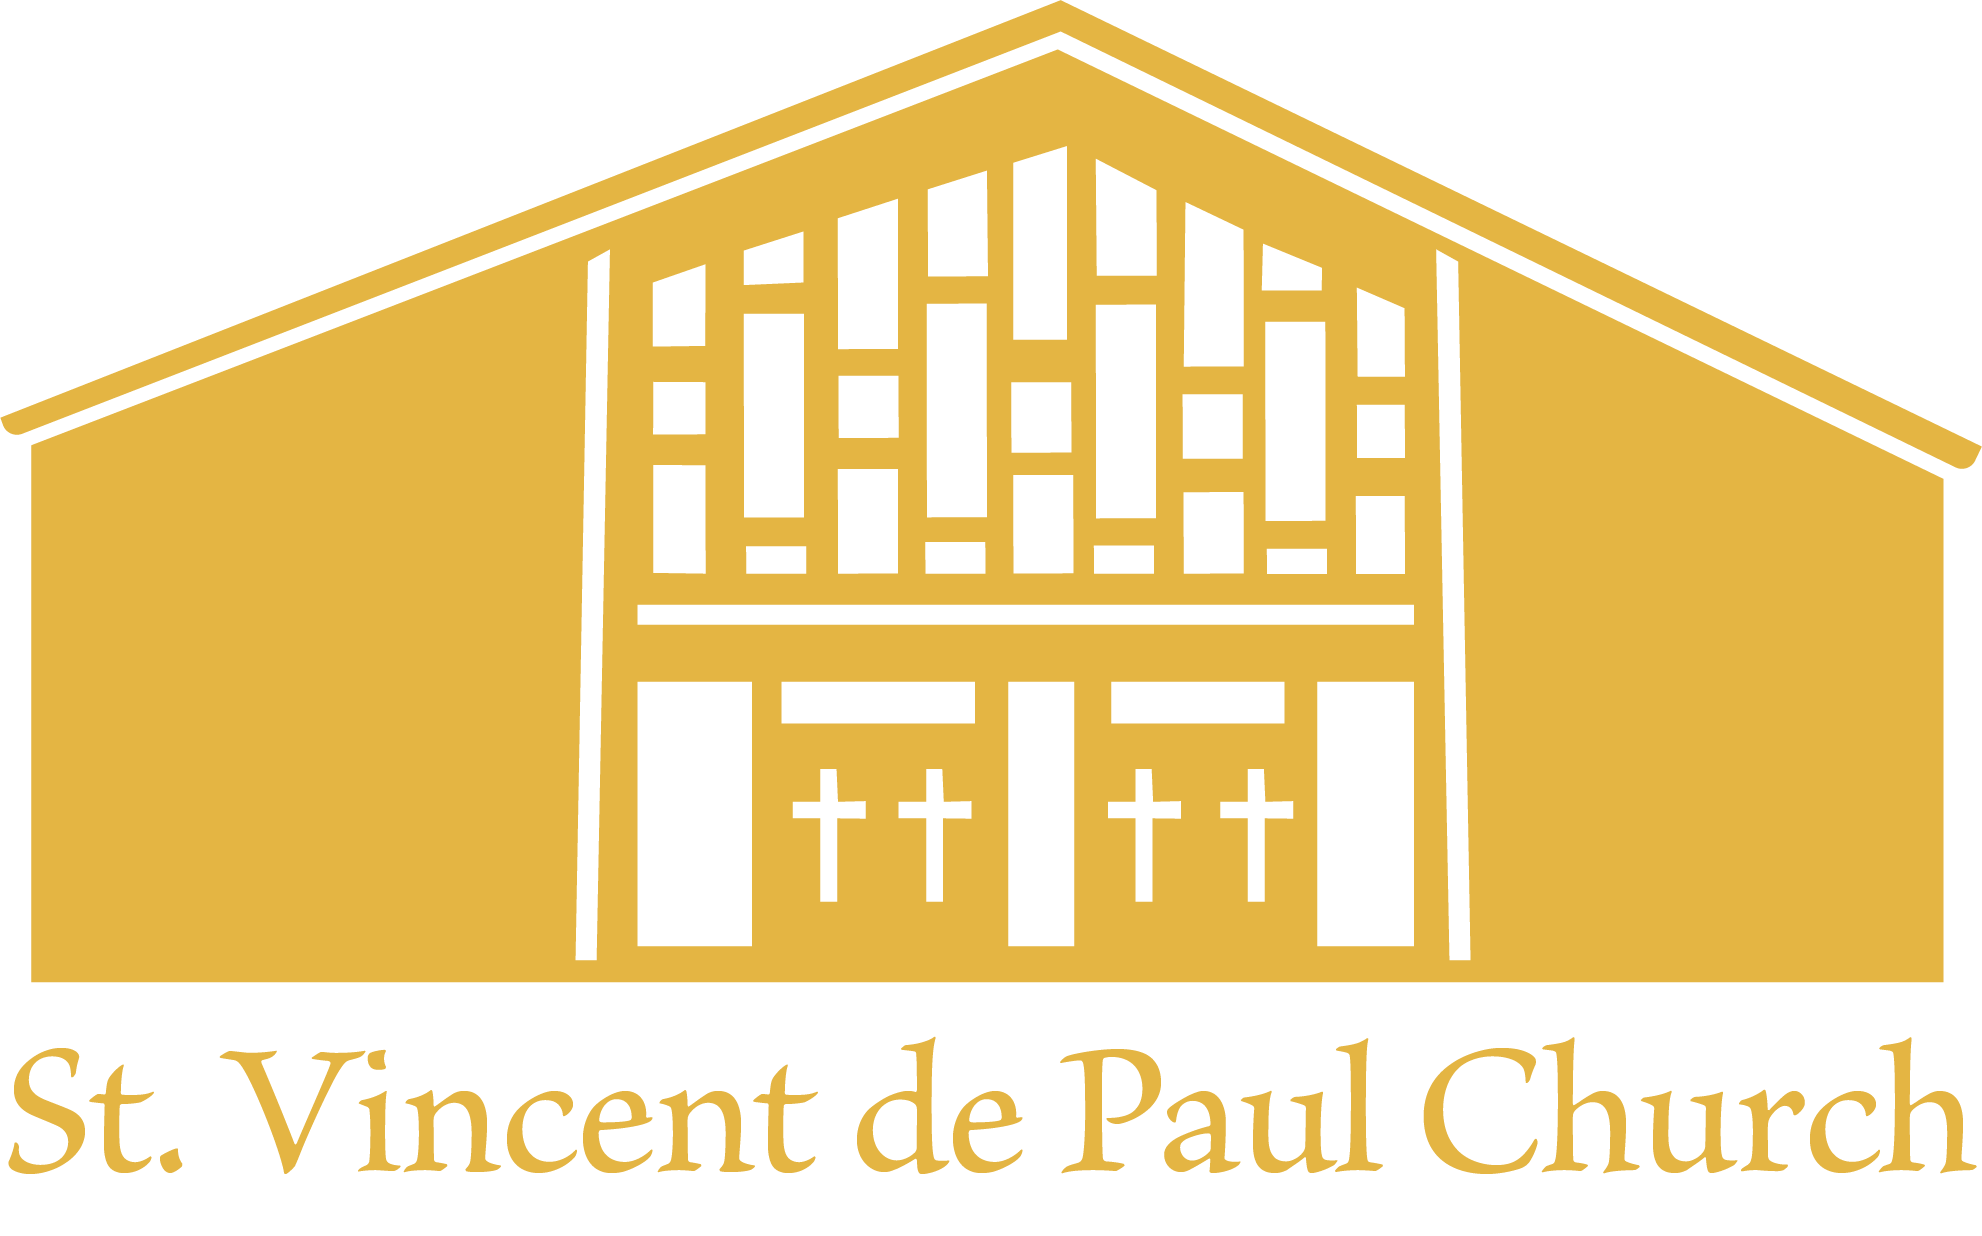 Pastor’s Greeting – St. Vincent de Paul Church